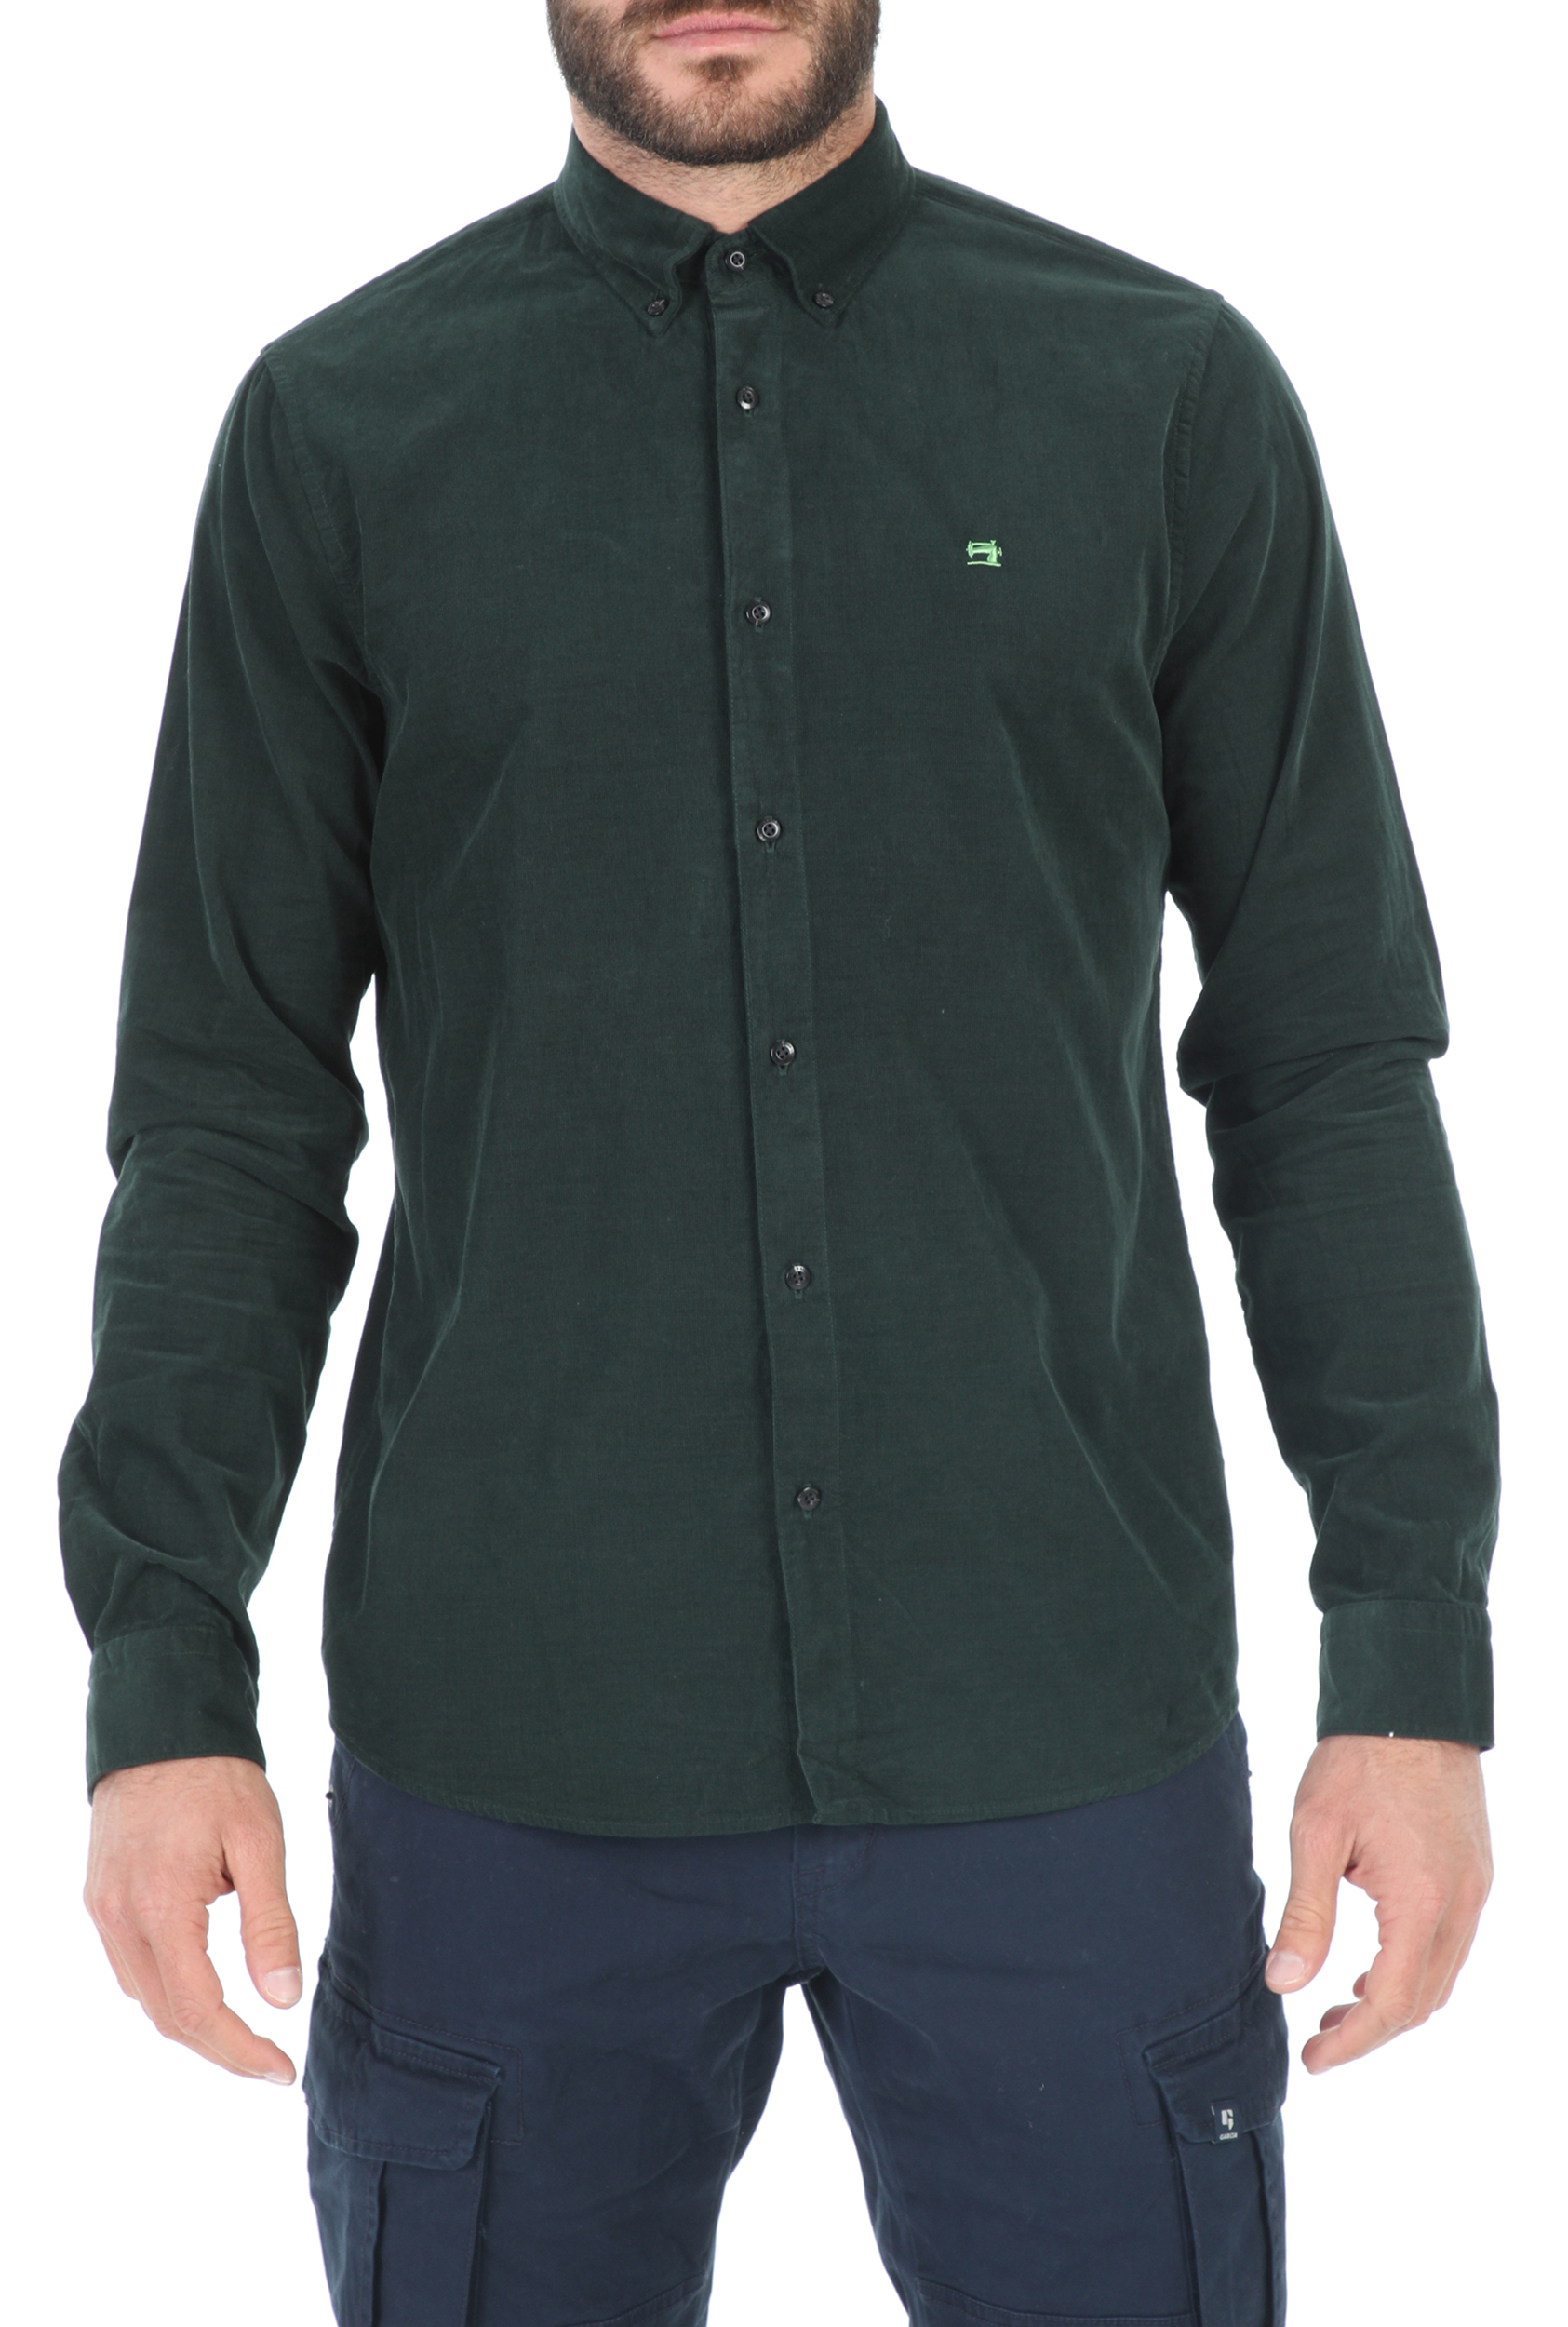 Ανδρικά/Ρούχα/Πουκάμισα/Μακρυμάνικα SCOTCH & SODA - Ανδρικό πουκάμισο SCOTCH & SODA REGULAR FIT πράσινο